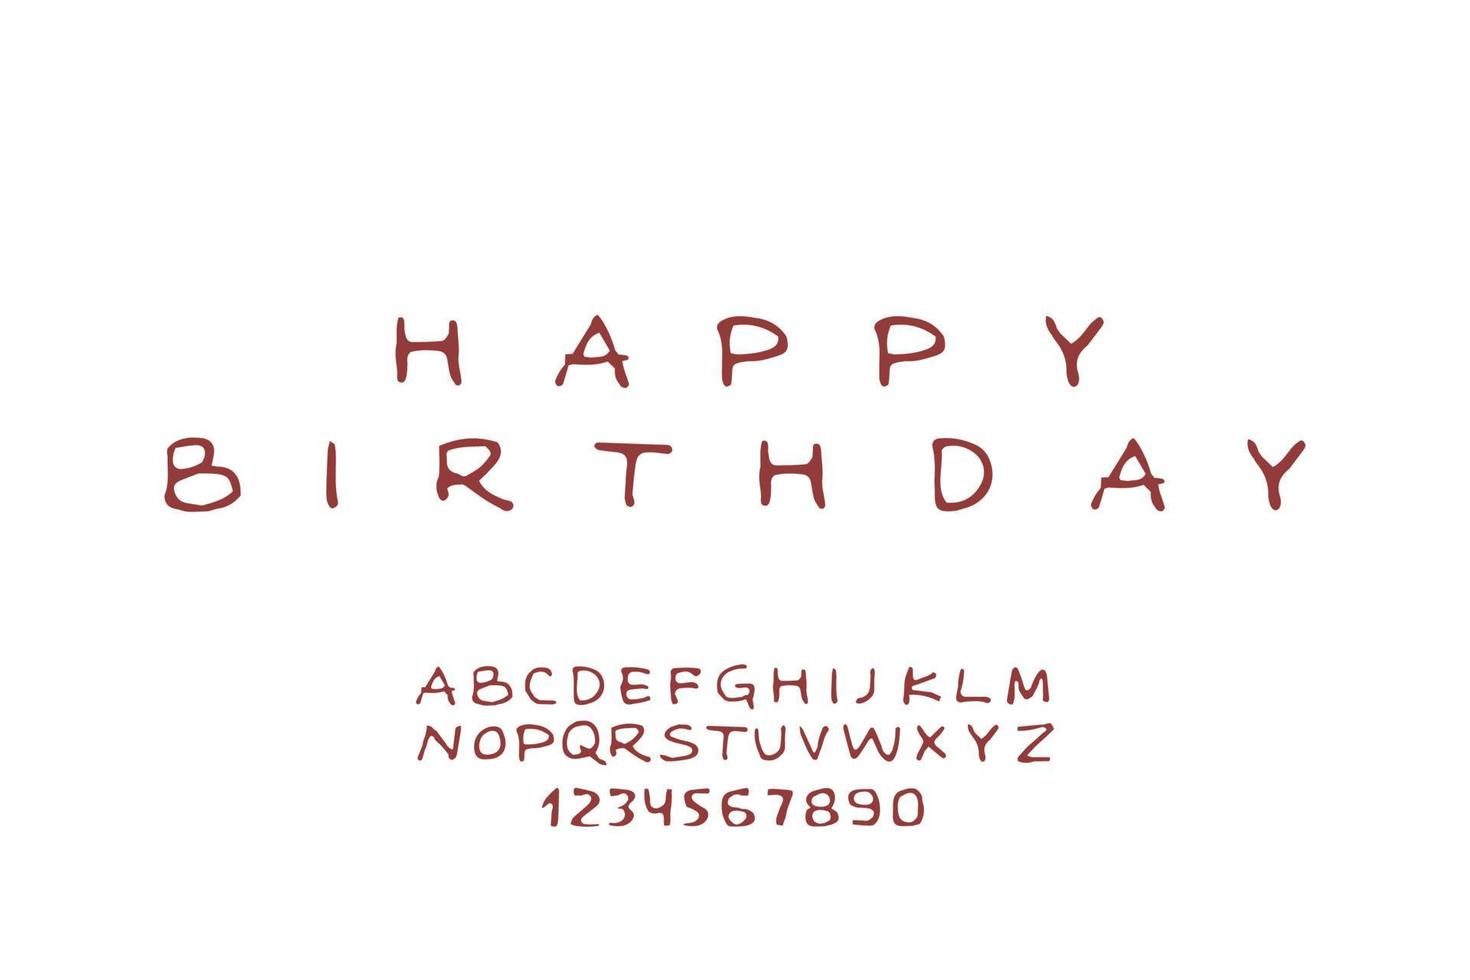 lettere e numeri di caratteri sottili disegnati a mano monocromatici. illustrazioni vettoriali isolate su sfondo bianco. frase di buon compleanno come esempio